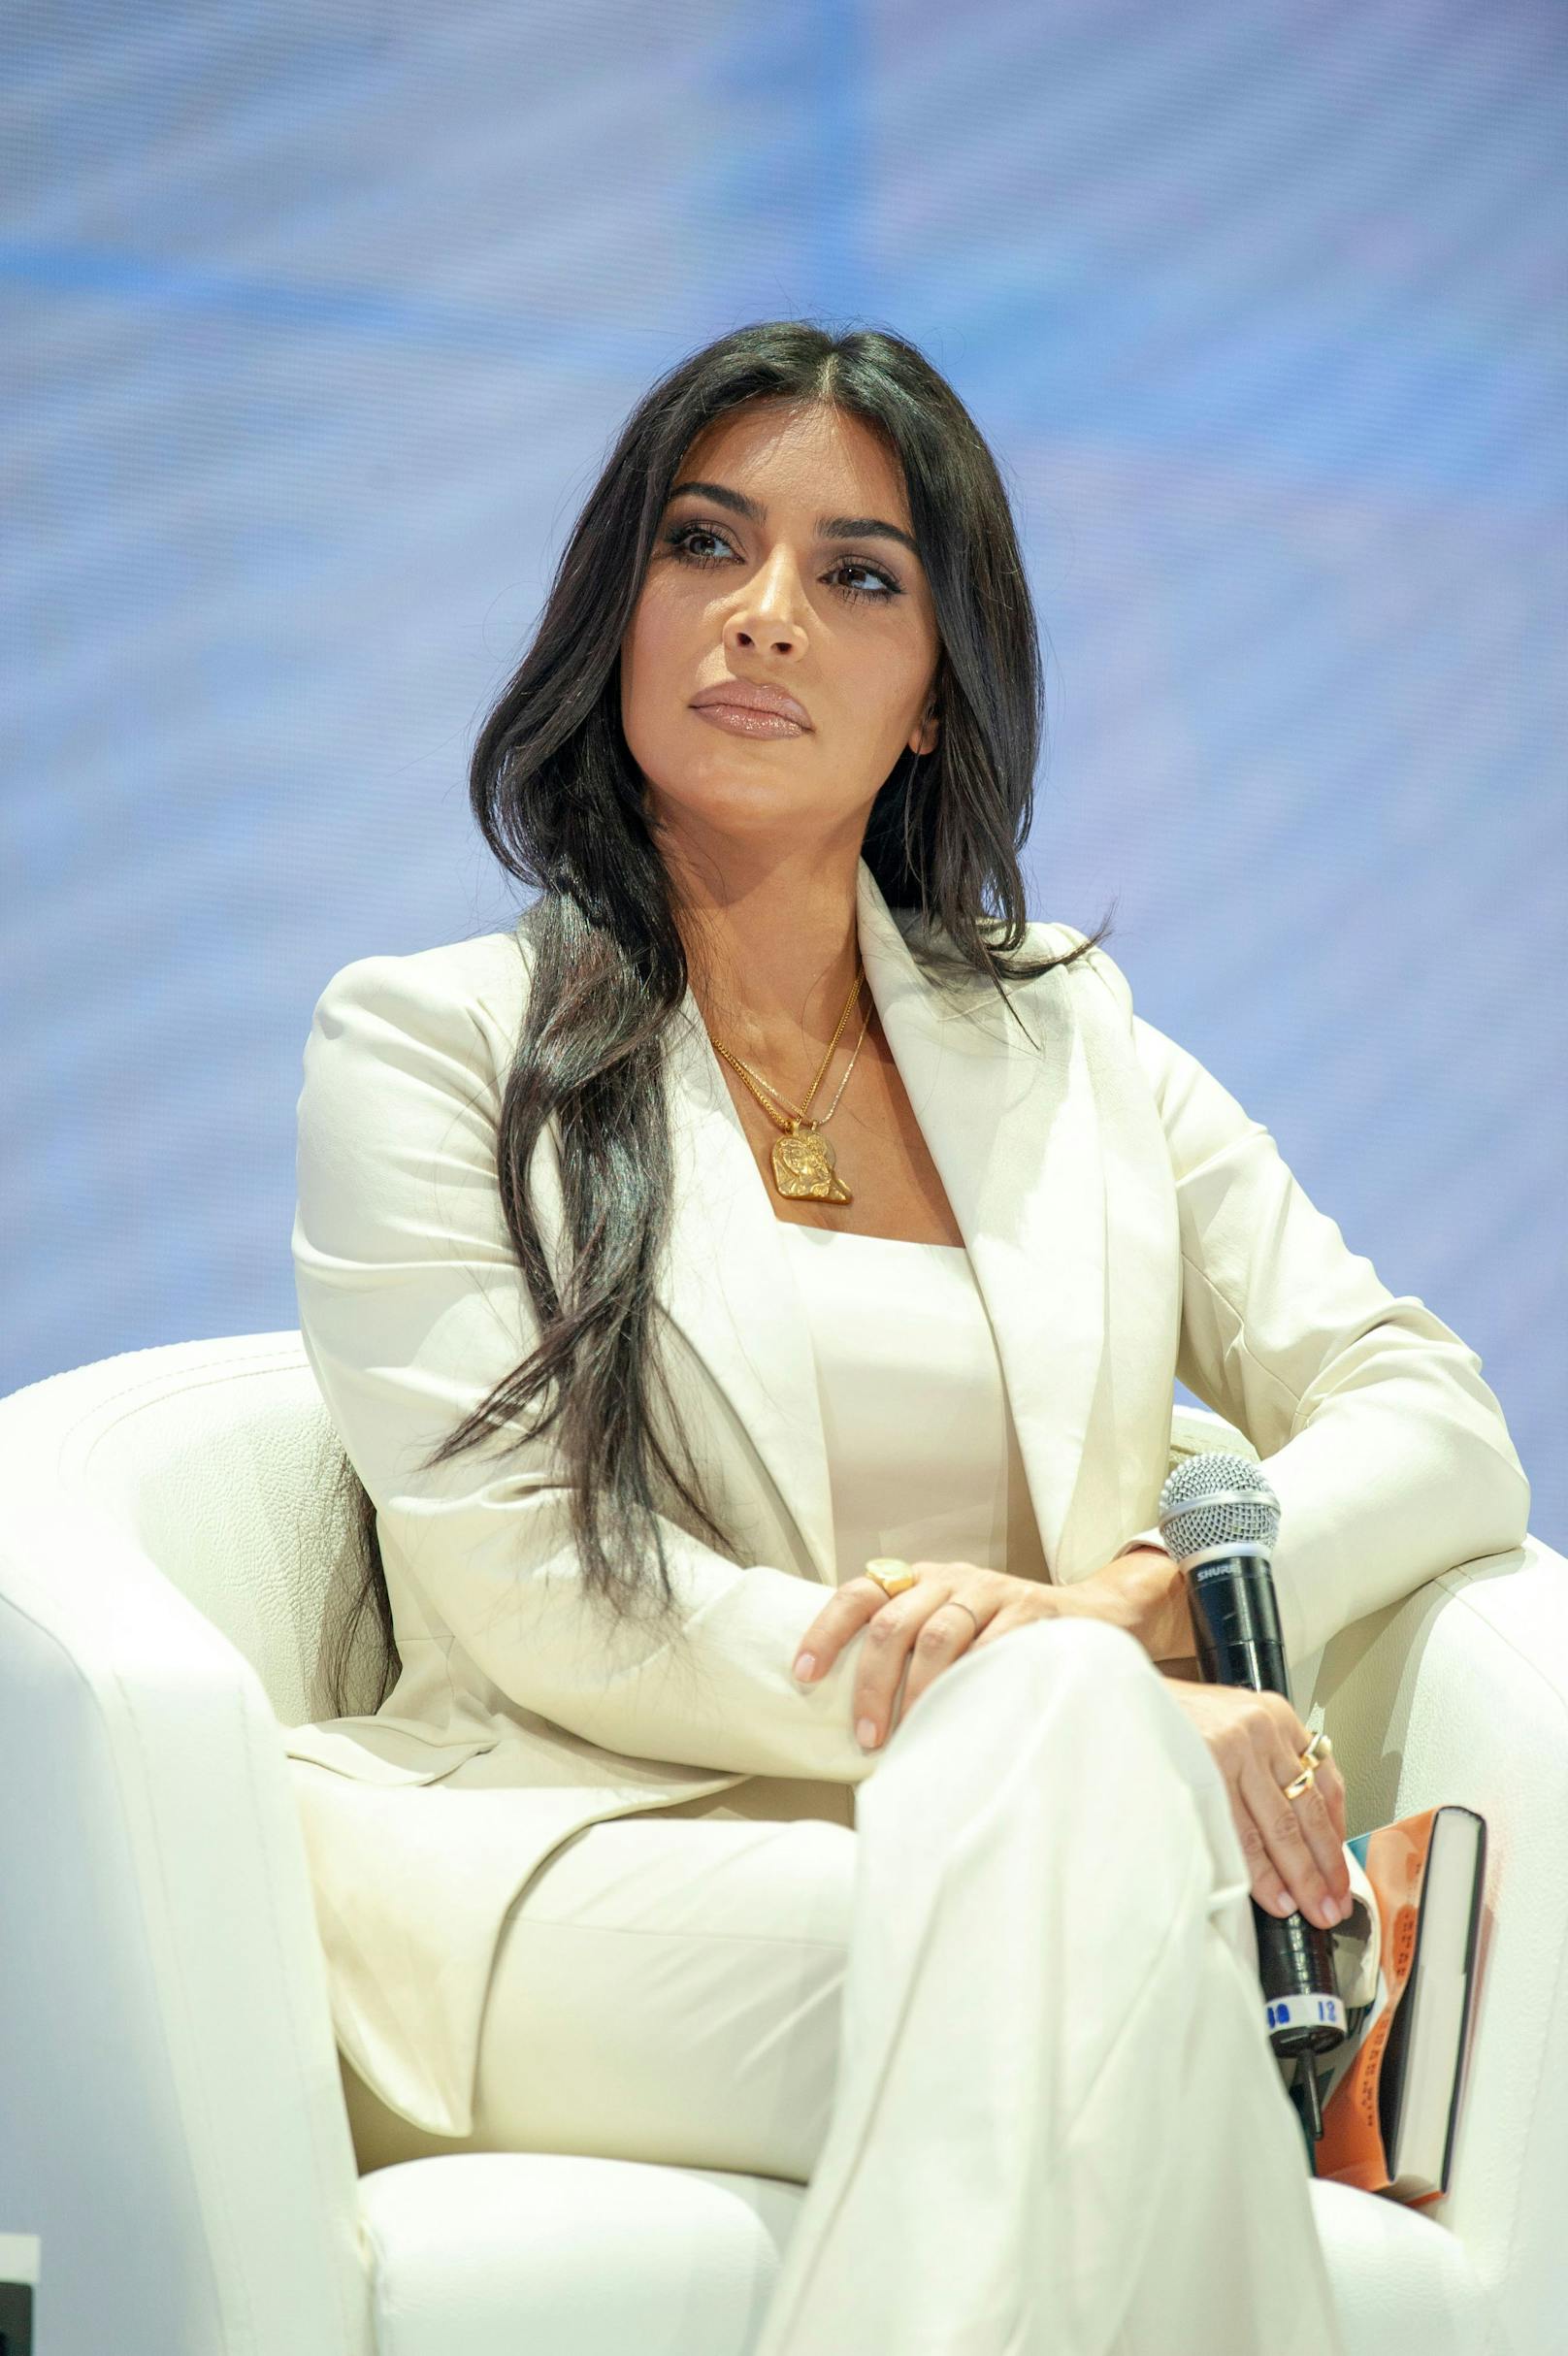 Kim Kardashian im Business-Look.